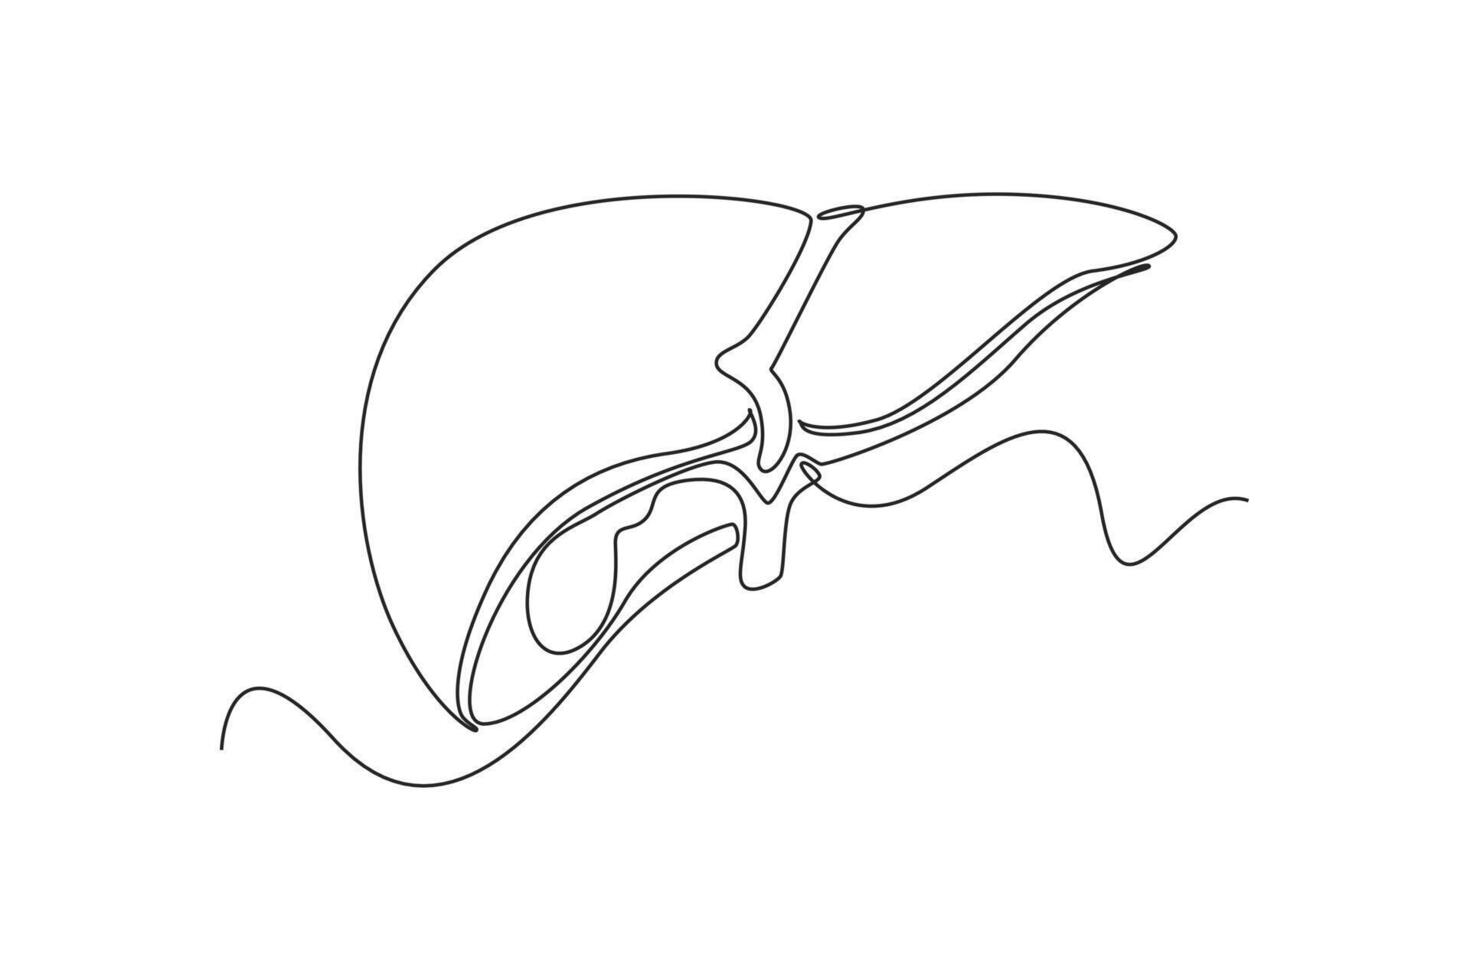 uno continuo línea dibujo de anatomía de humano concepto. garabatear ilustración en sencillo lineal estilo. vector